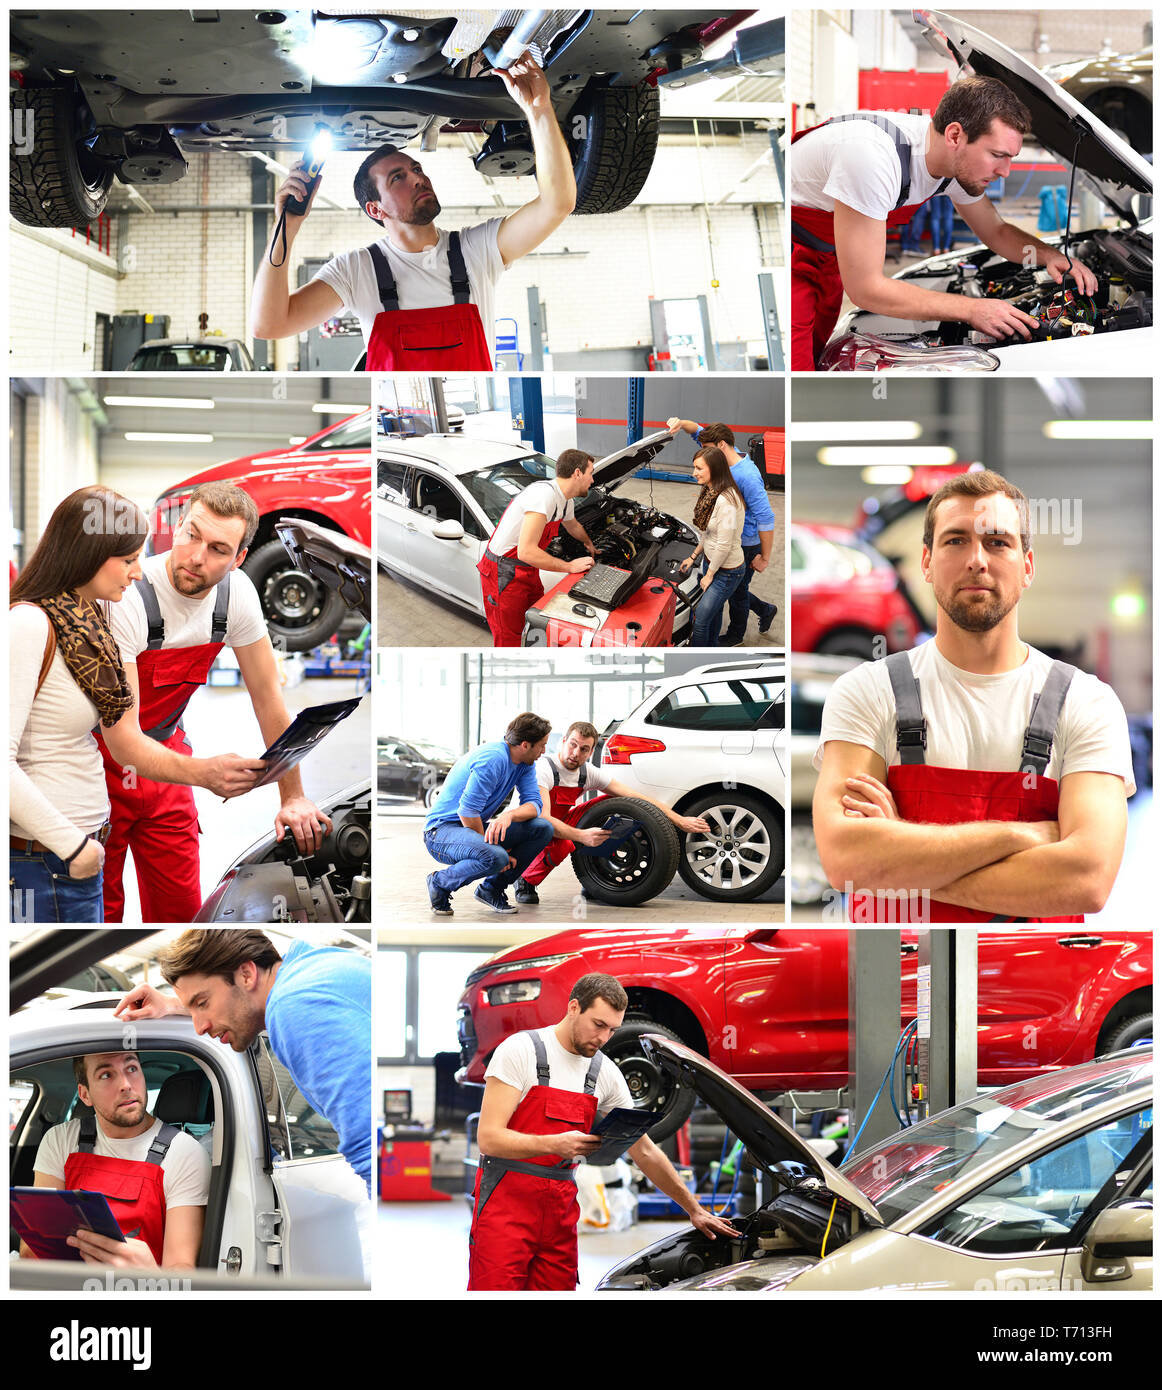 Kundendienst in einer Garage - Mechaniker und die Reparatur eines Fahrzeugs besprechen - Portrait workman Stockfoto